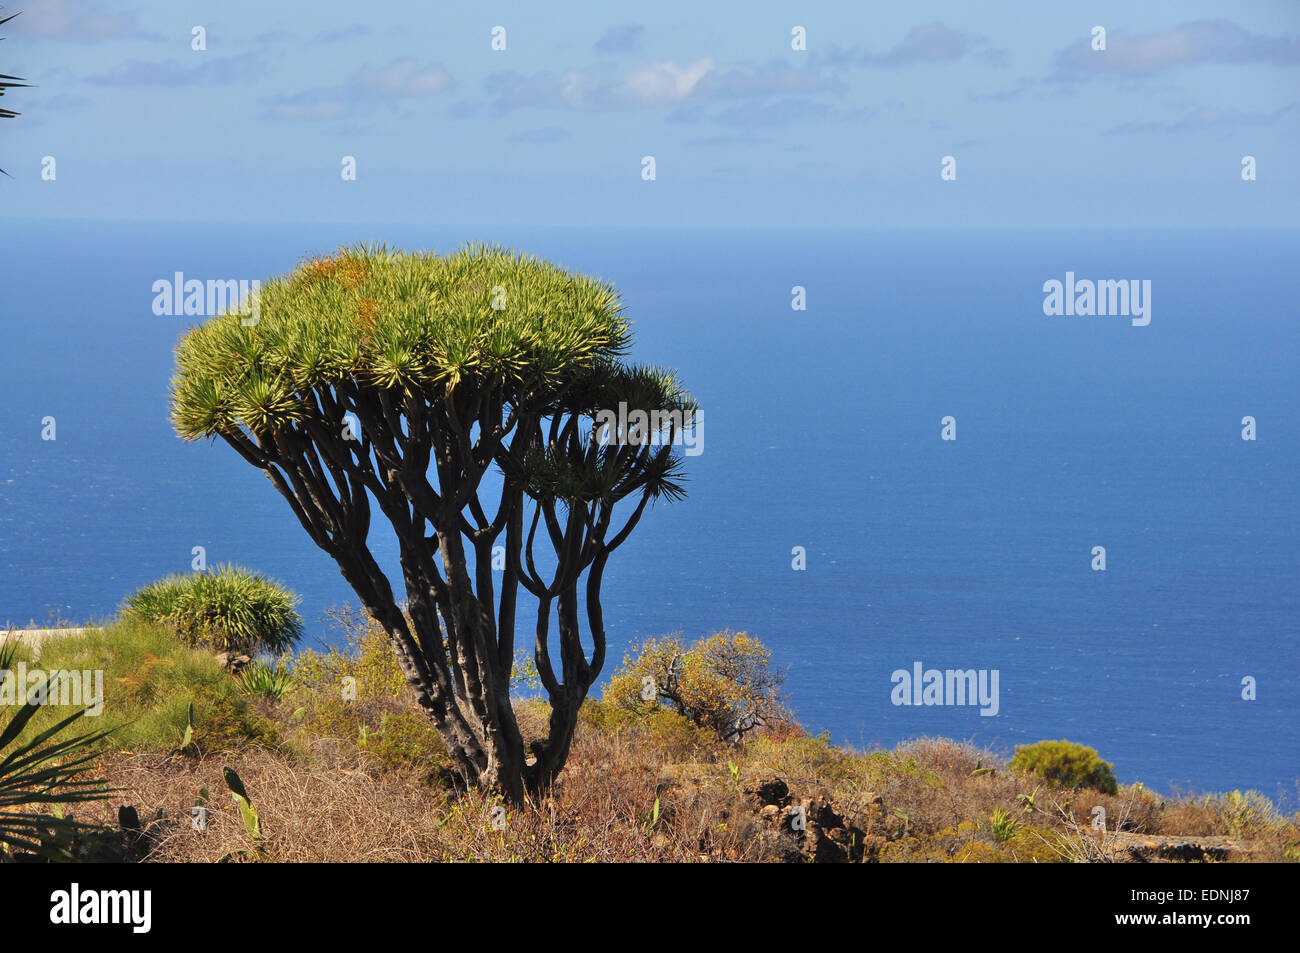 Canary Islands Dragon Tree or Drago (Dracaena draco), La Palma, Canary Islands, Spain Stock Photo